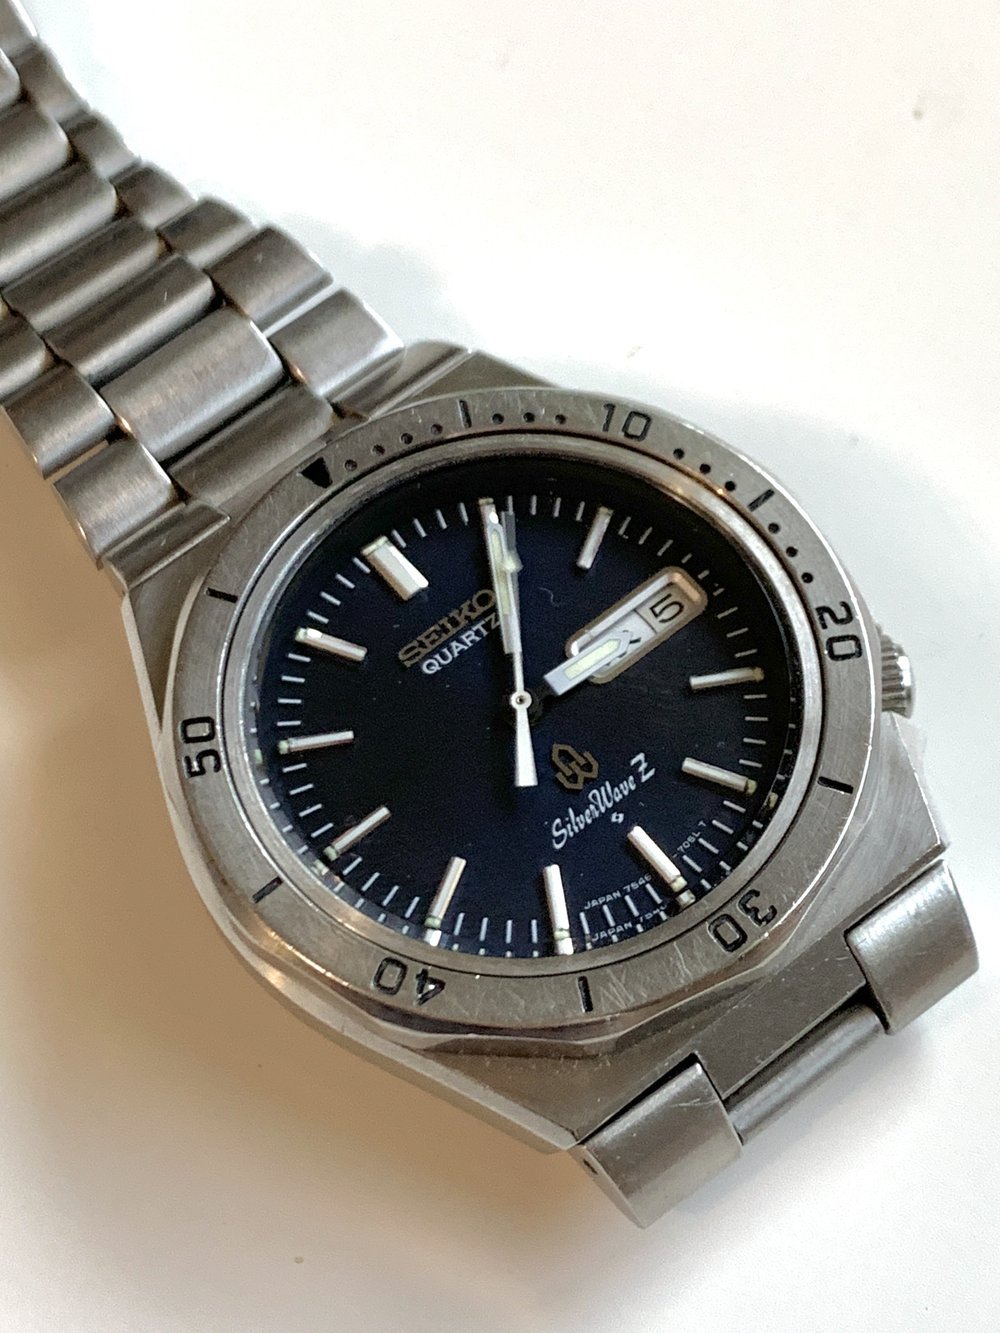 Seiko 7546-7040 from August 1978 — Klein Vintage Watch